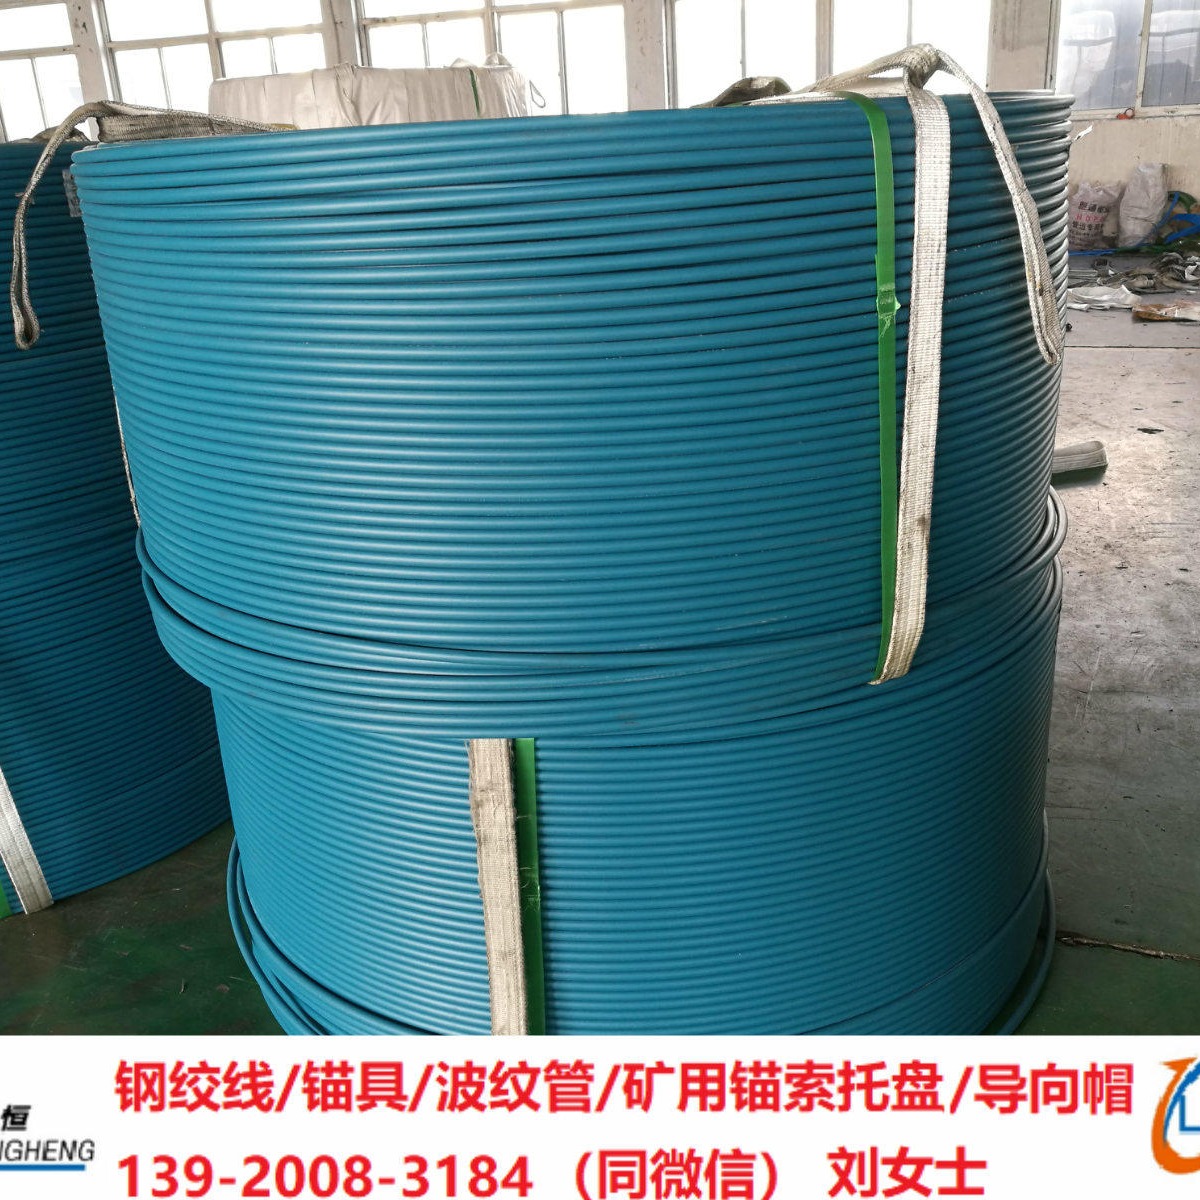 钢绞线生产厂家直销无粘结钢绞线HDPE钢绞线15.2